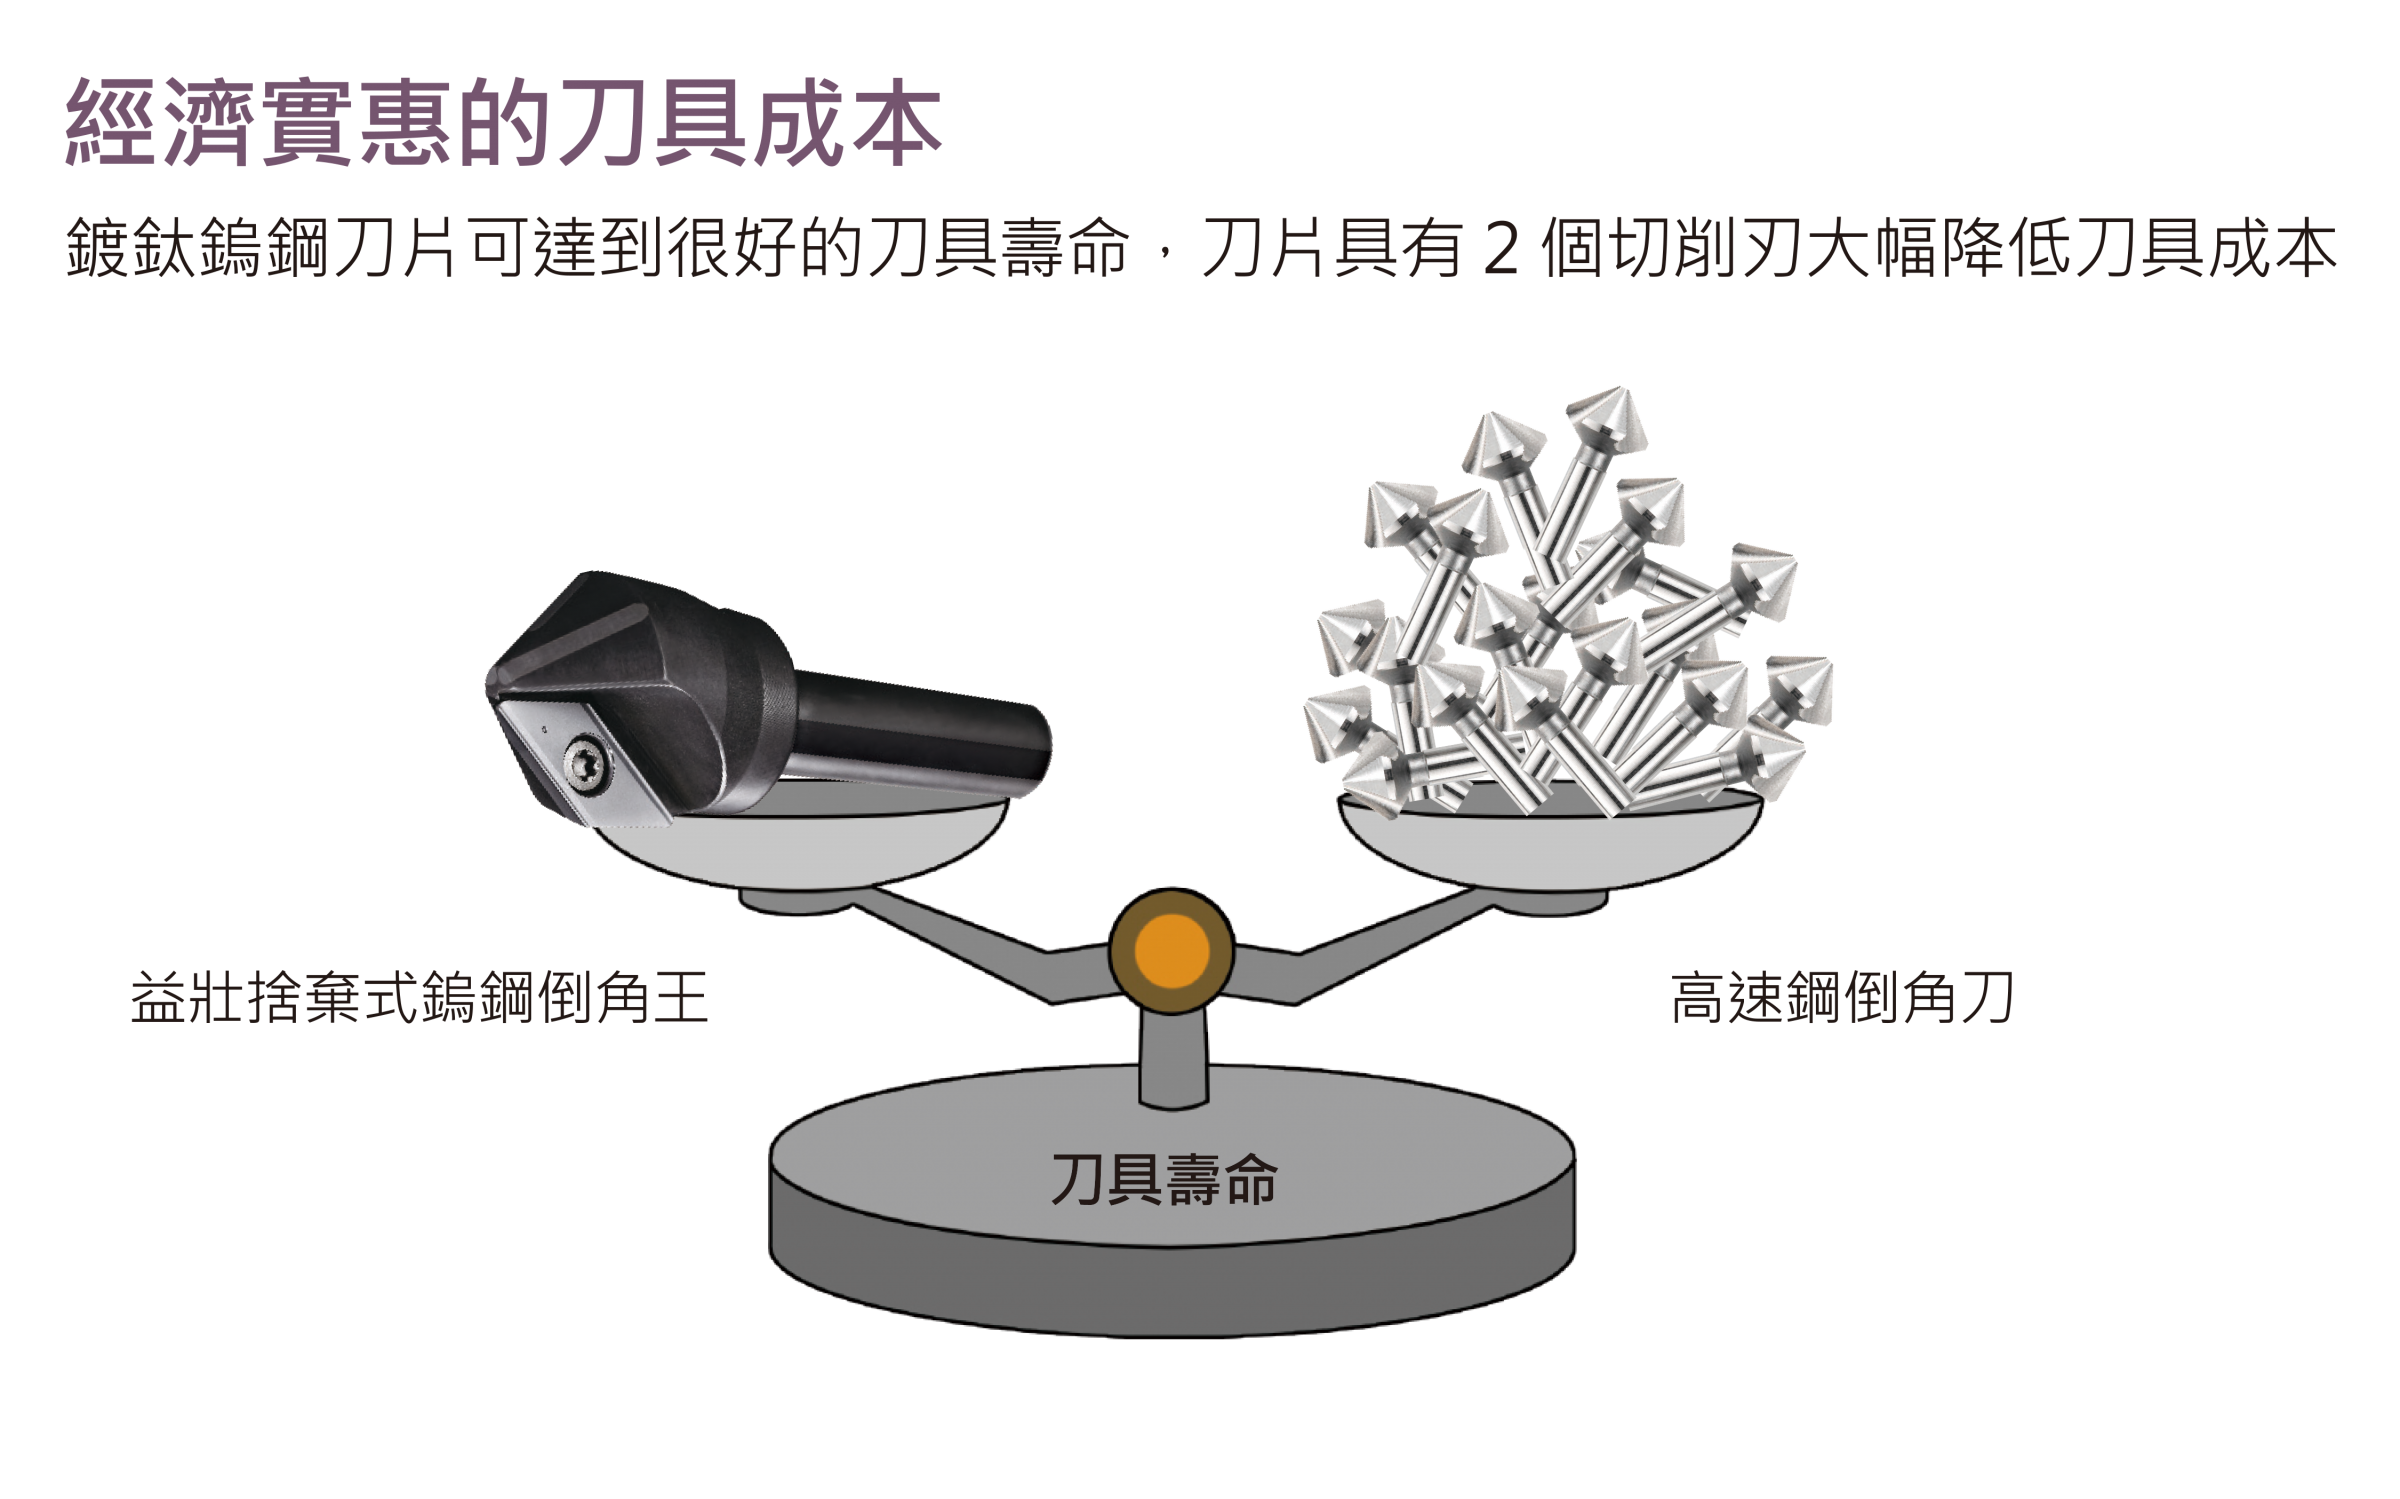 Yizhuang Chamfer Kingの2つの最先端により、交換ツールのコストを節約できます